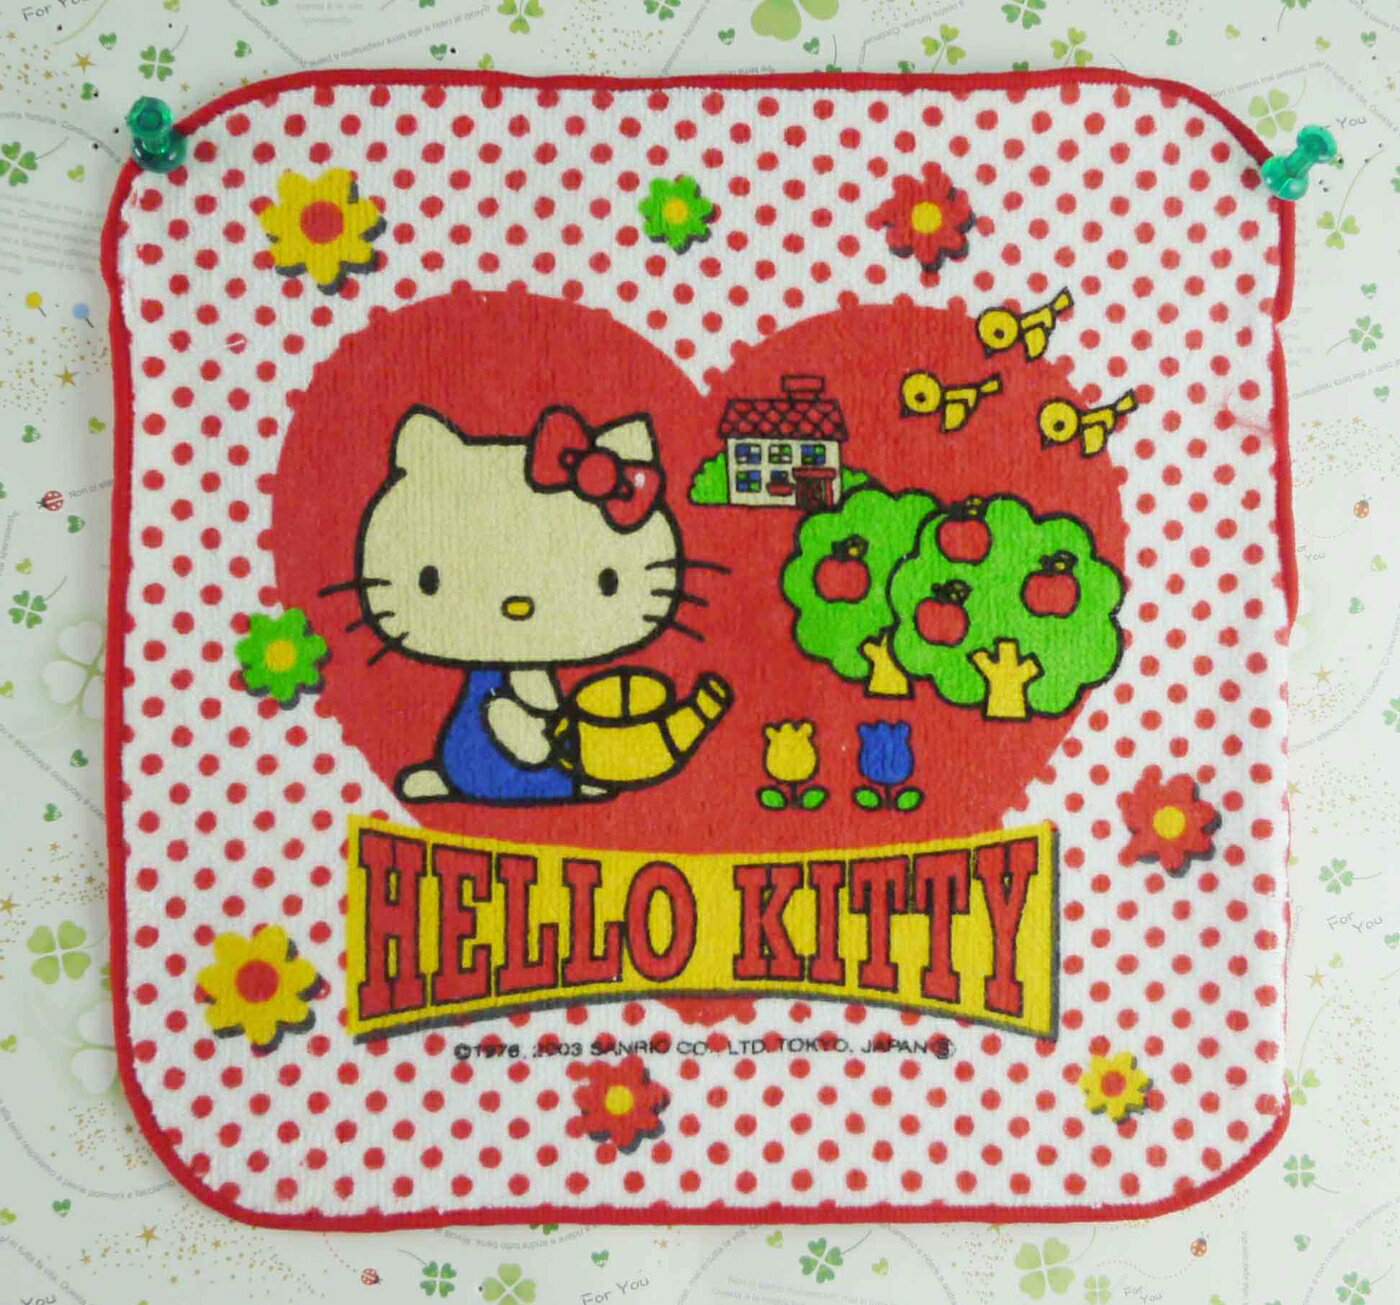 【震撼精品百貨】Hello Kitty 凱蒂貓 方巾-紅白點愛心澆花 震撼日式精品百貨